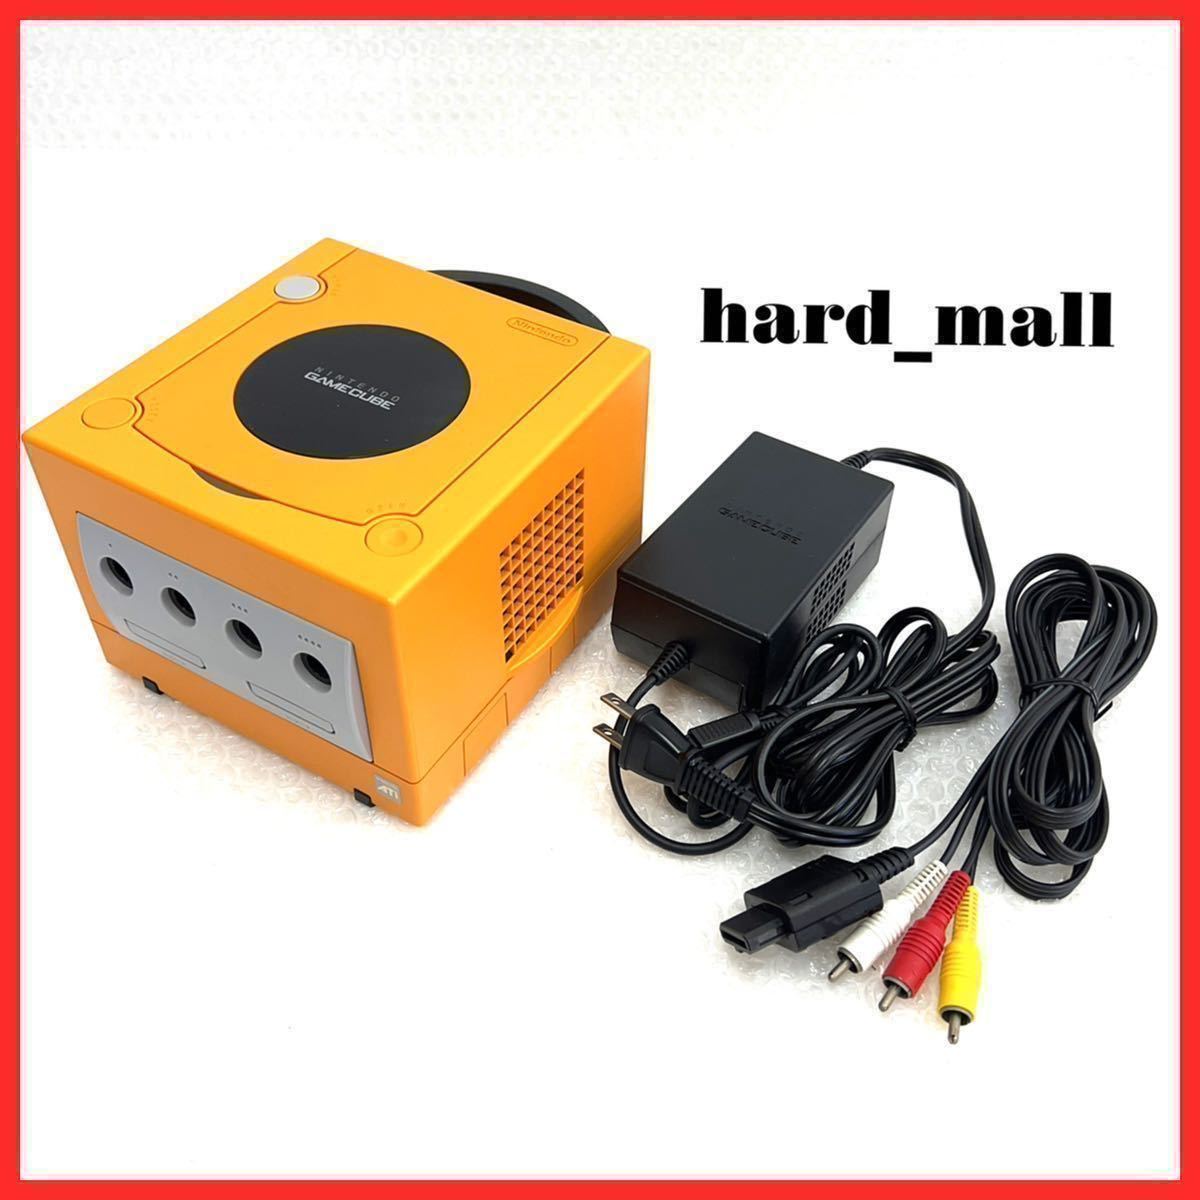 【美品】Nintendo GC ゲームキューブ DOL-001 / DOL-002 / SHVC-008 一式 セット 本体 / AVケーブル / 電源ケーブル 任天堂 オレンジ